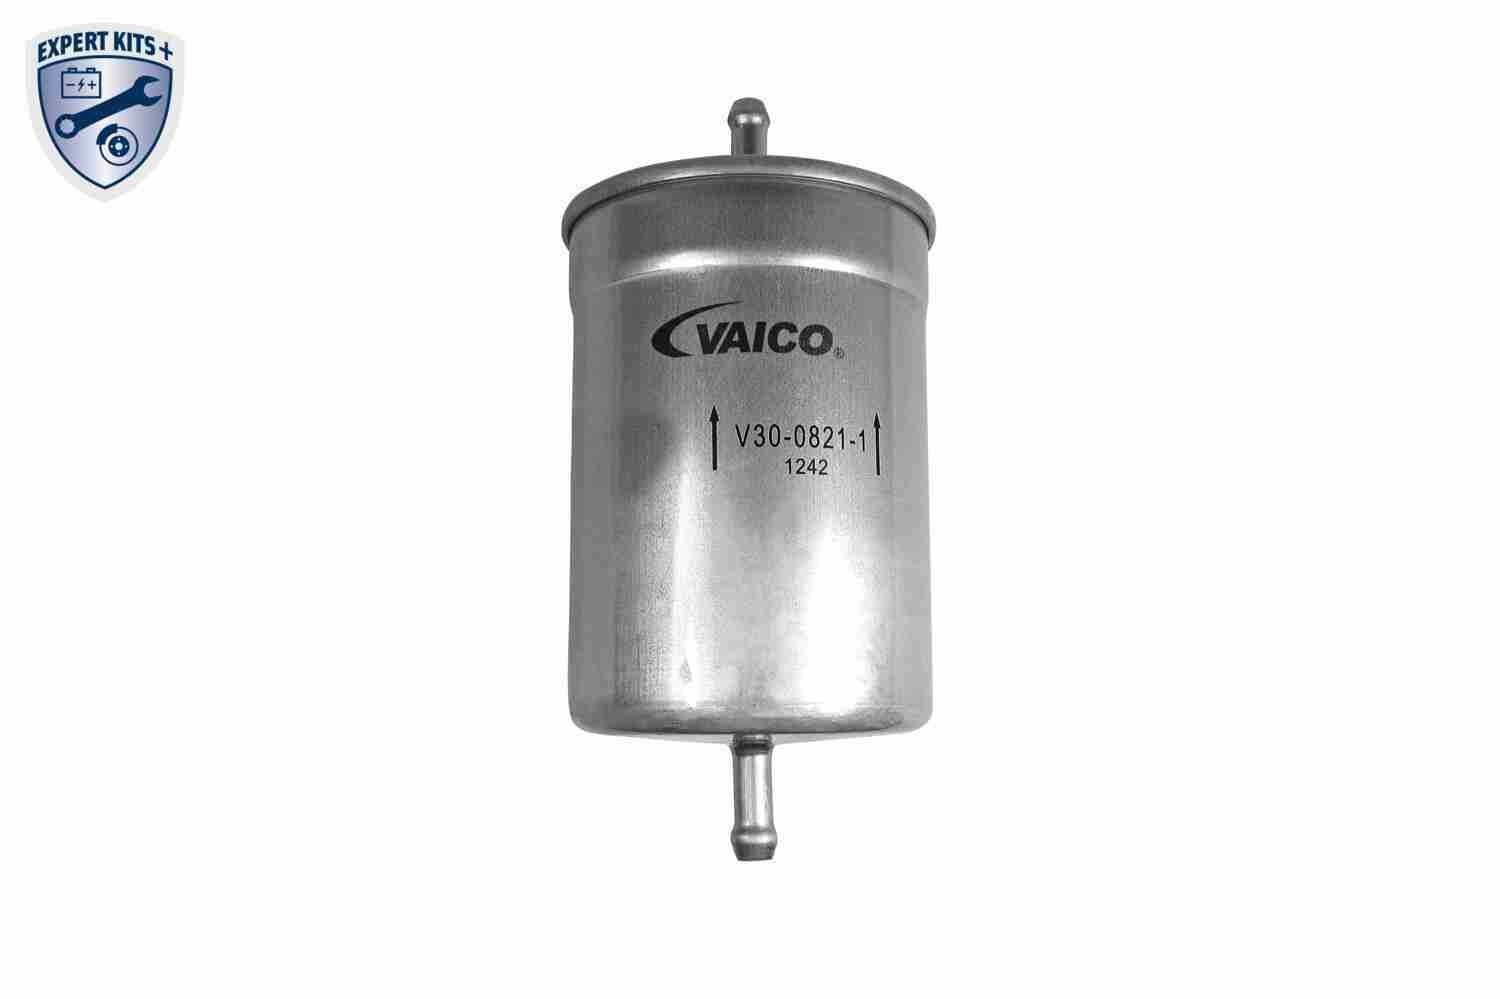 V30-0821-1 VAICO Fuel filters BMW Spin-on Filter, 8mm, 8mm, Original VAICO Quality